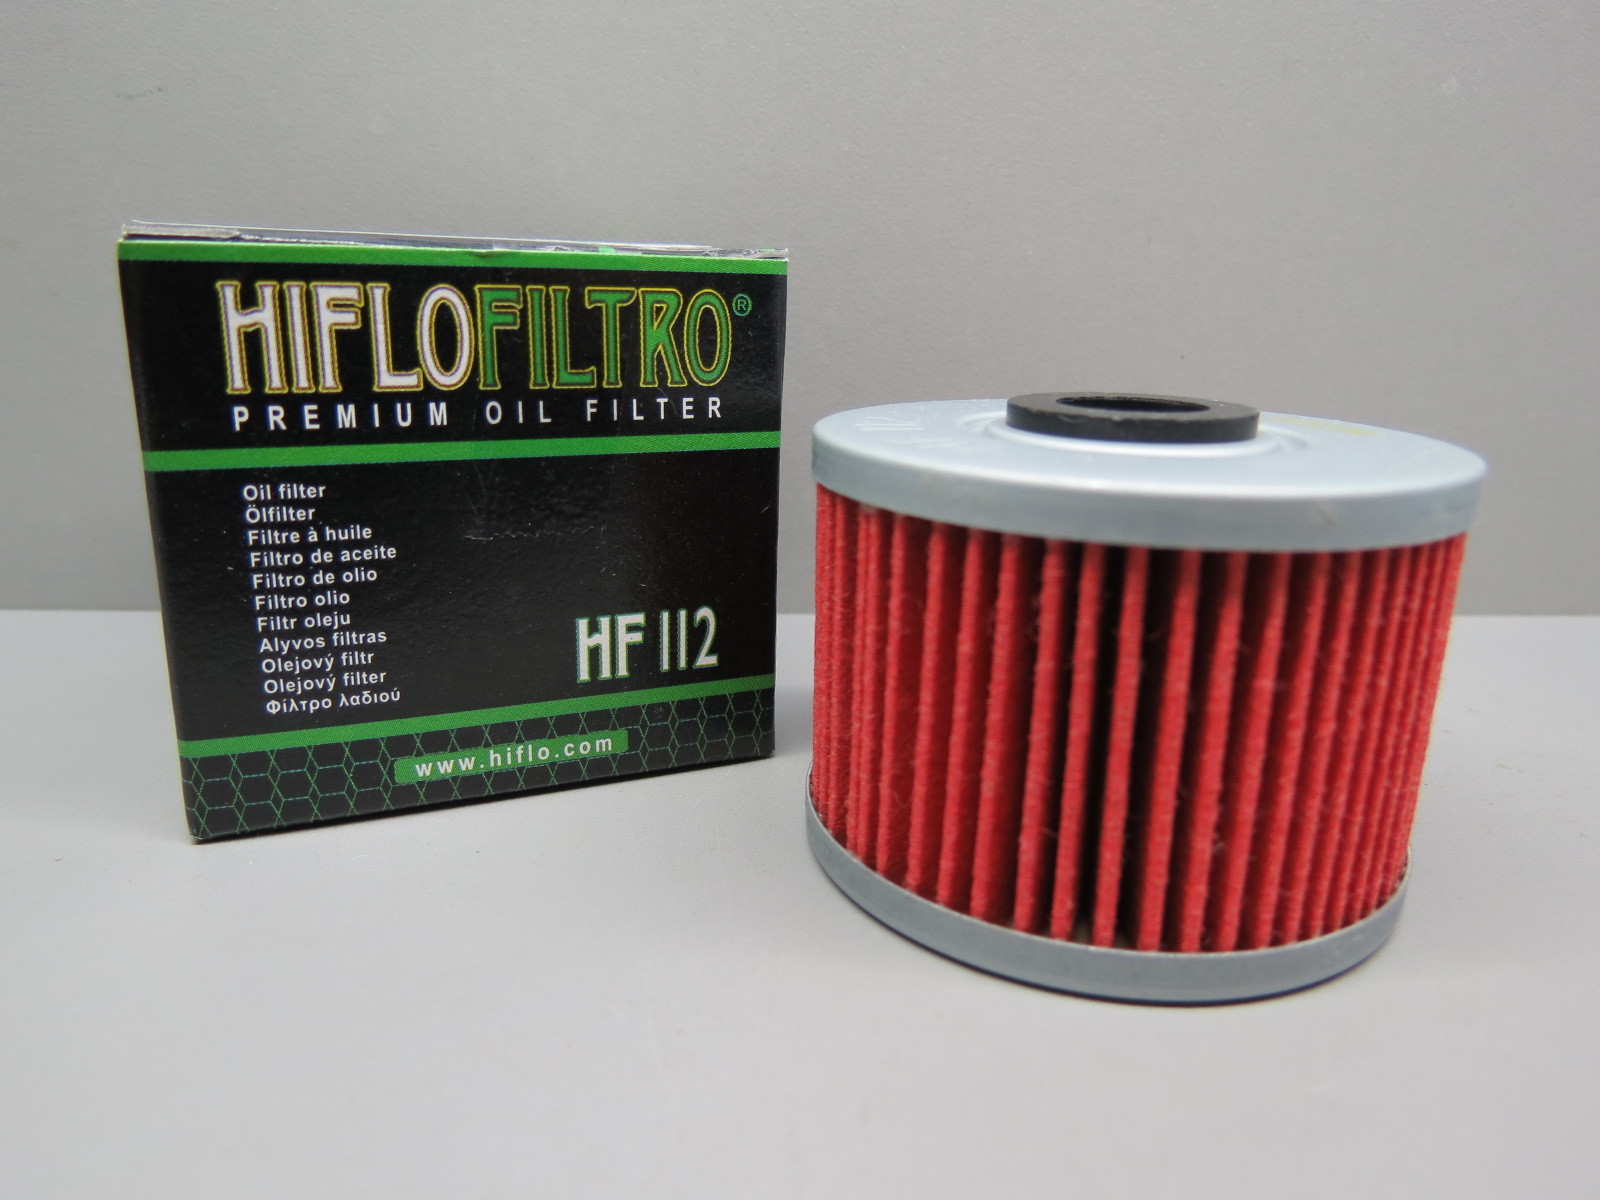 Фильтр баджадж боксер. Масляный фильтр HIFLO hf112. Hf112 фильтр масляный HIFLOFILTRO. HIFLO 112 масляный фильтр. Фильтр масляный hf112 Honda.